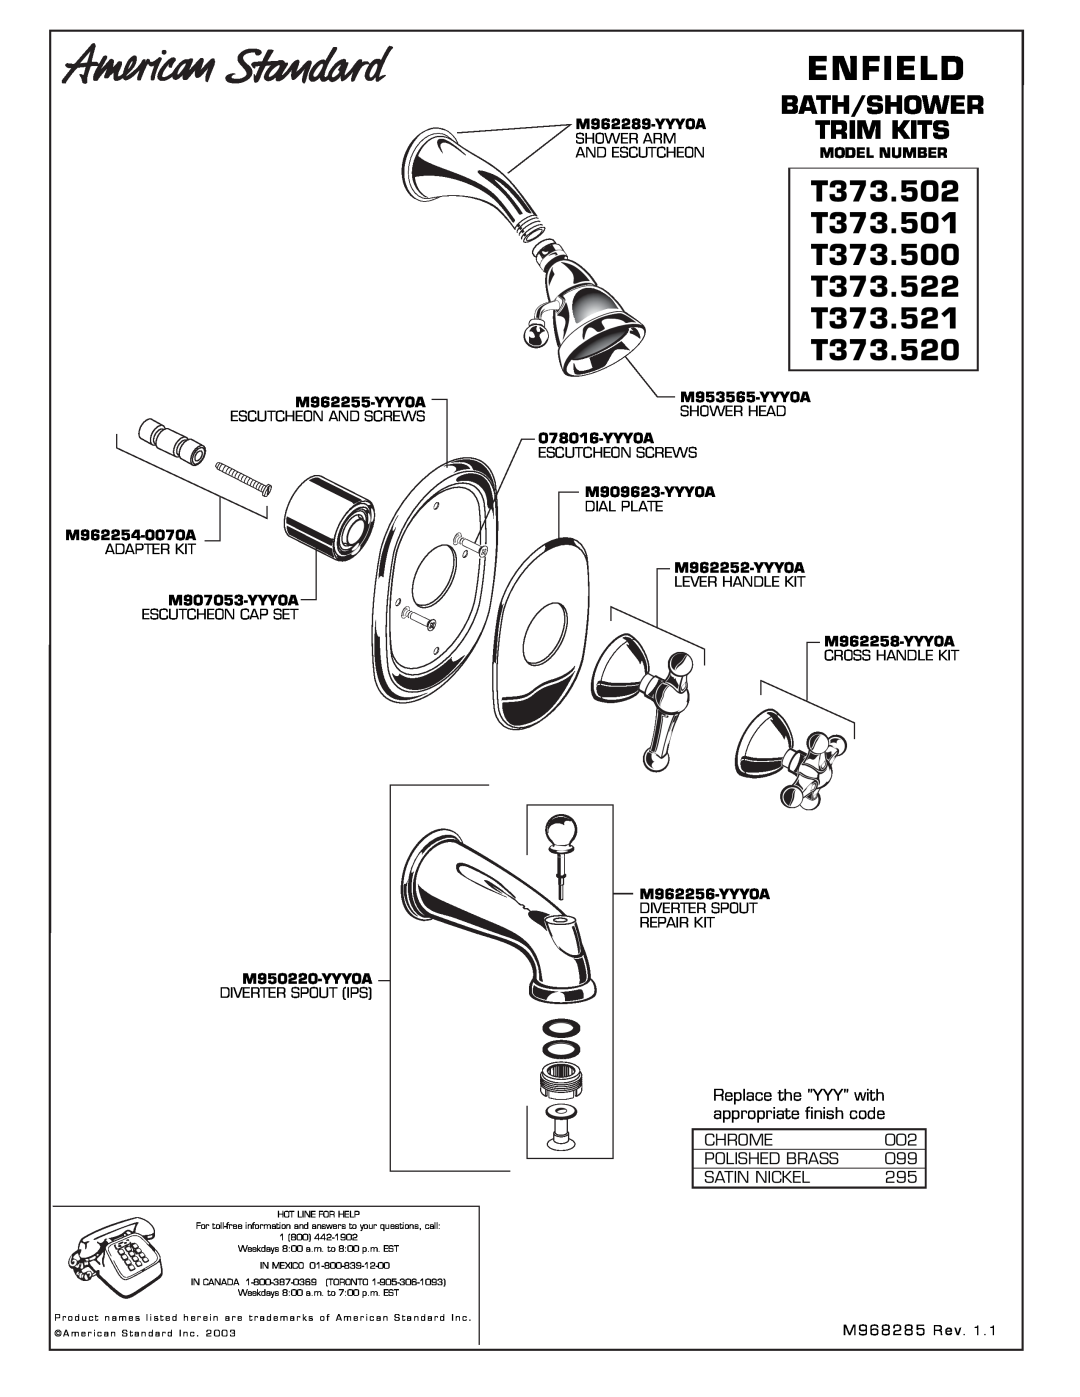 American Standard T373.502 manual Enfield, T373.501, T373.500, T373.522, T373.521, T373.520, Bath/Shower, Trim Kits 